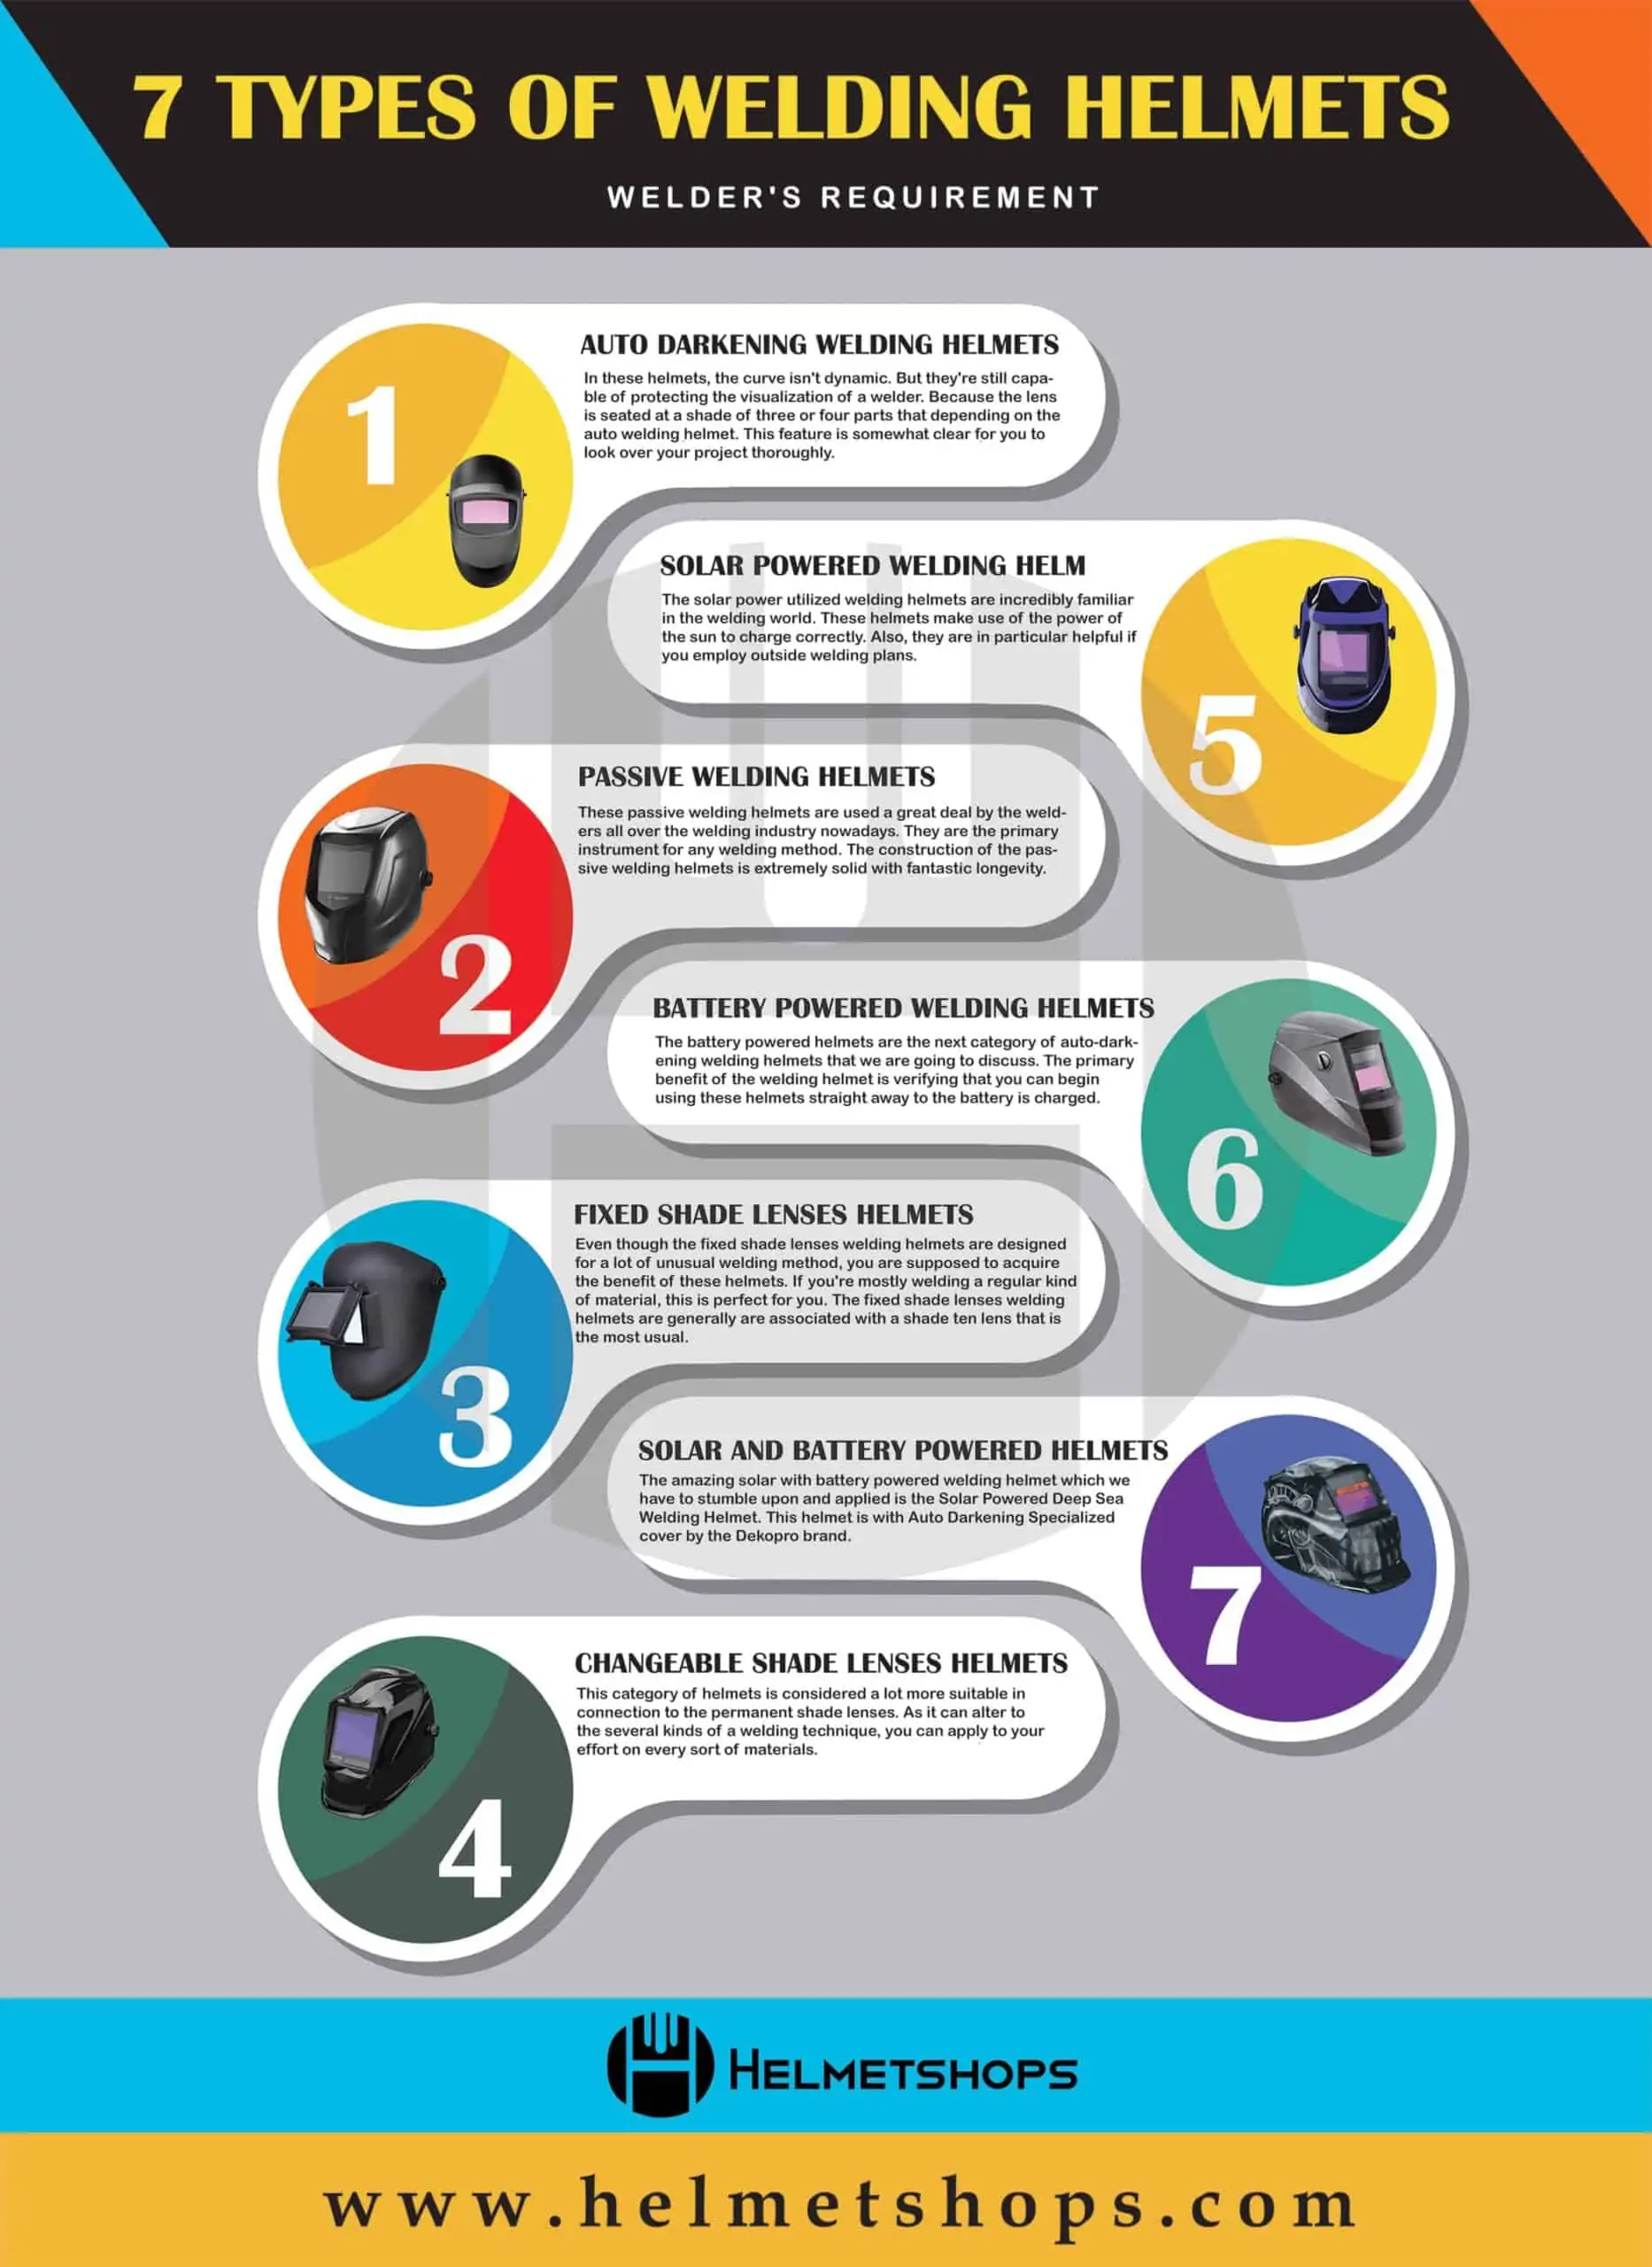 7 types of welding helmets